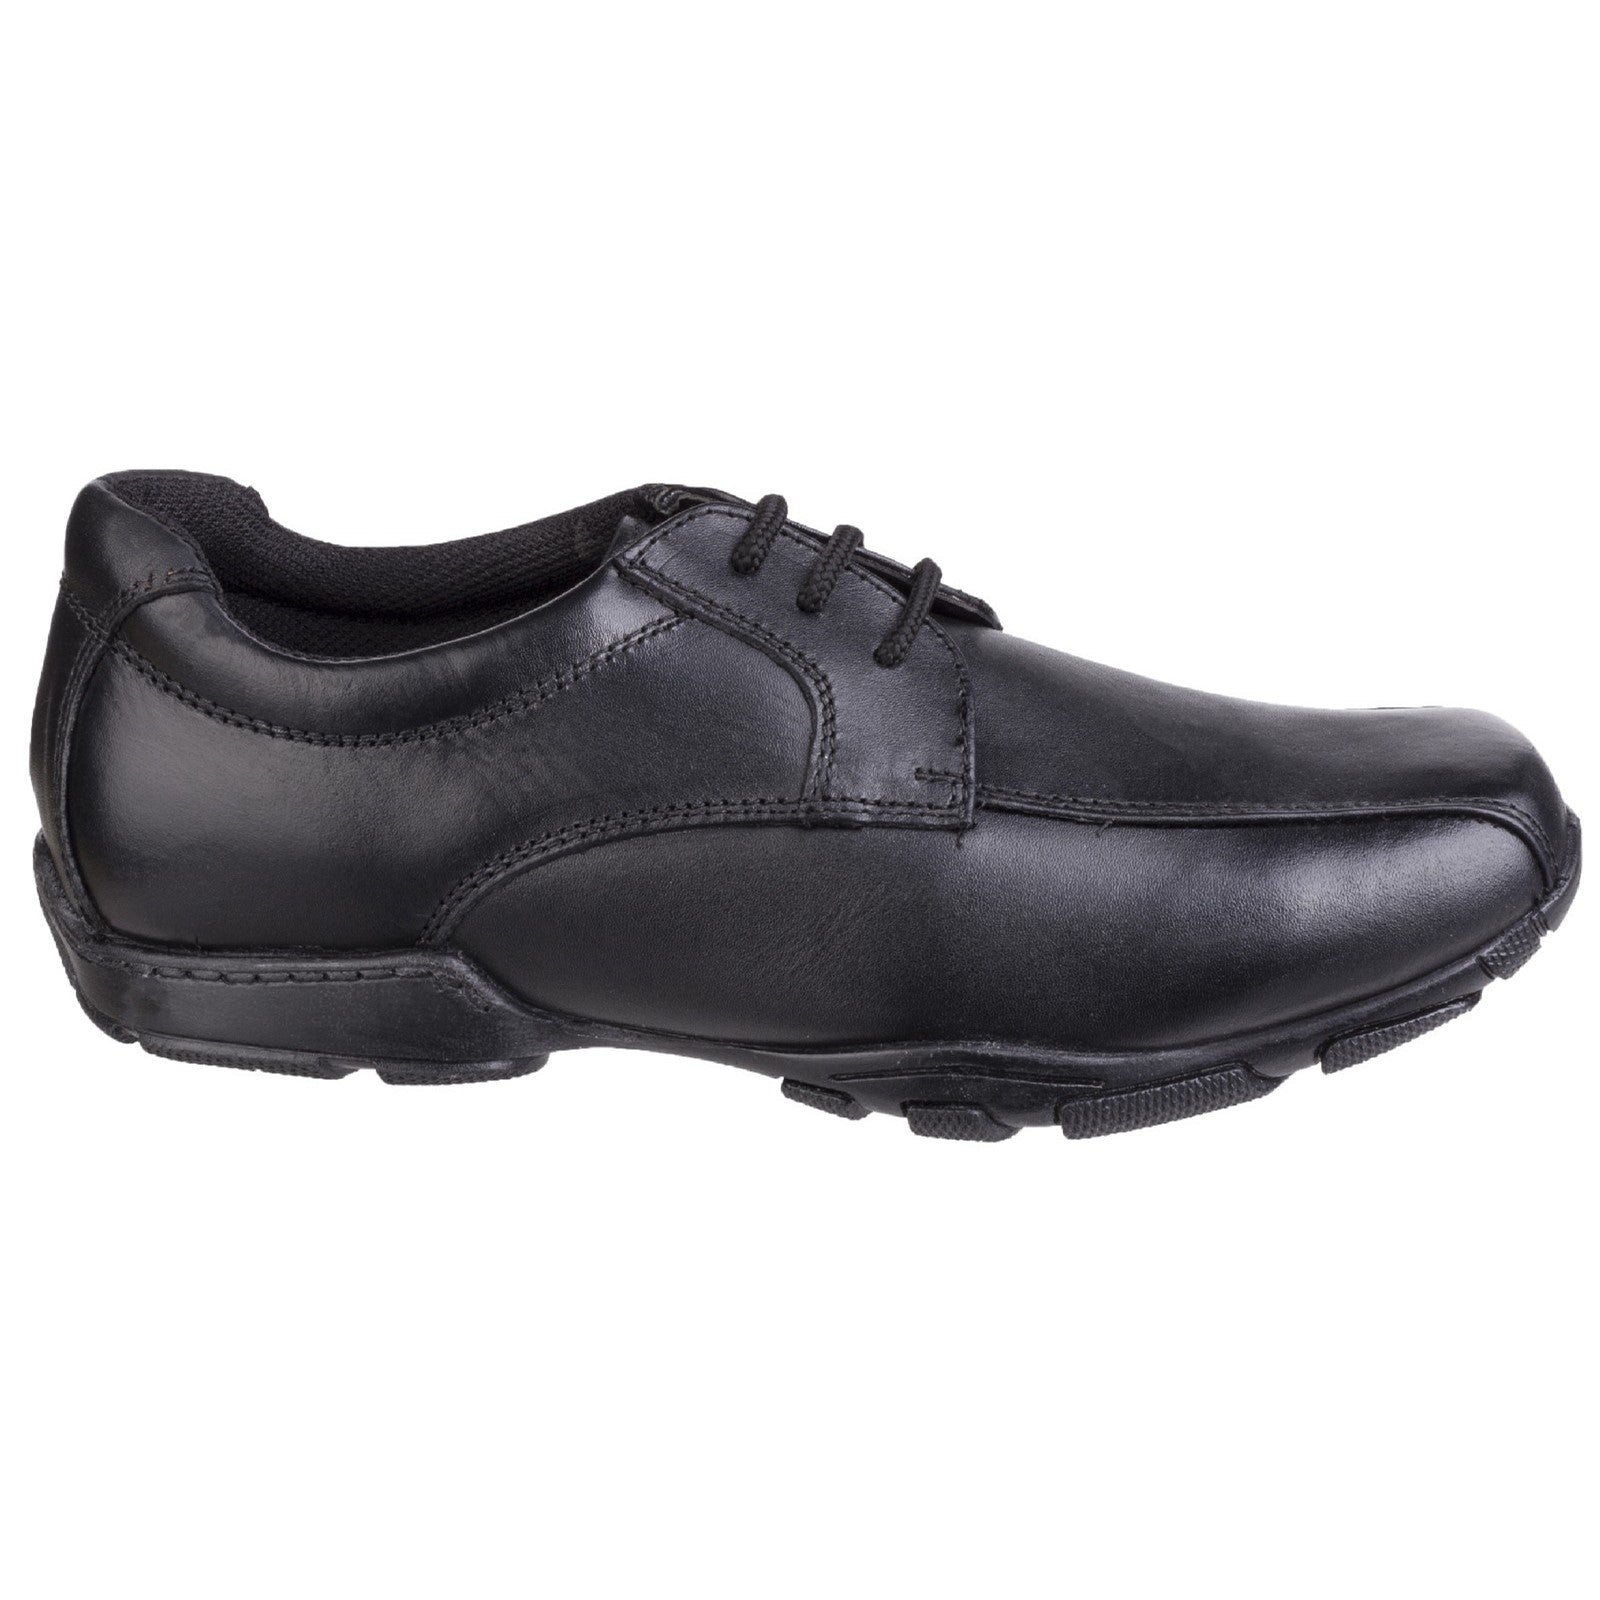 Hush Puppies Boys Vincente Leather School Shoes - Black